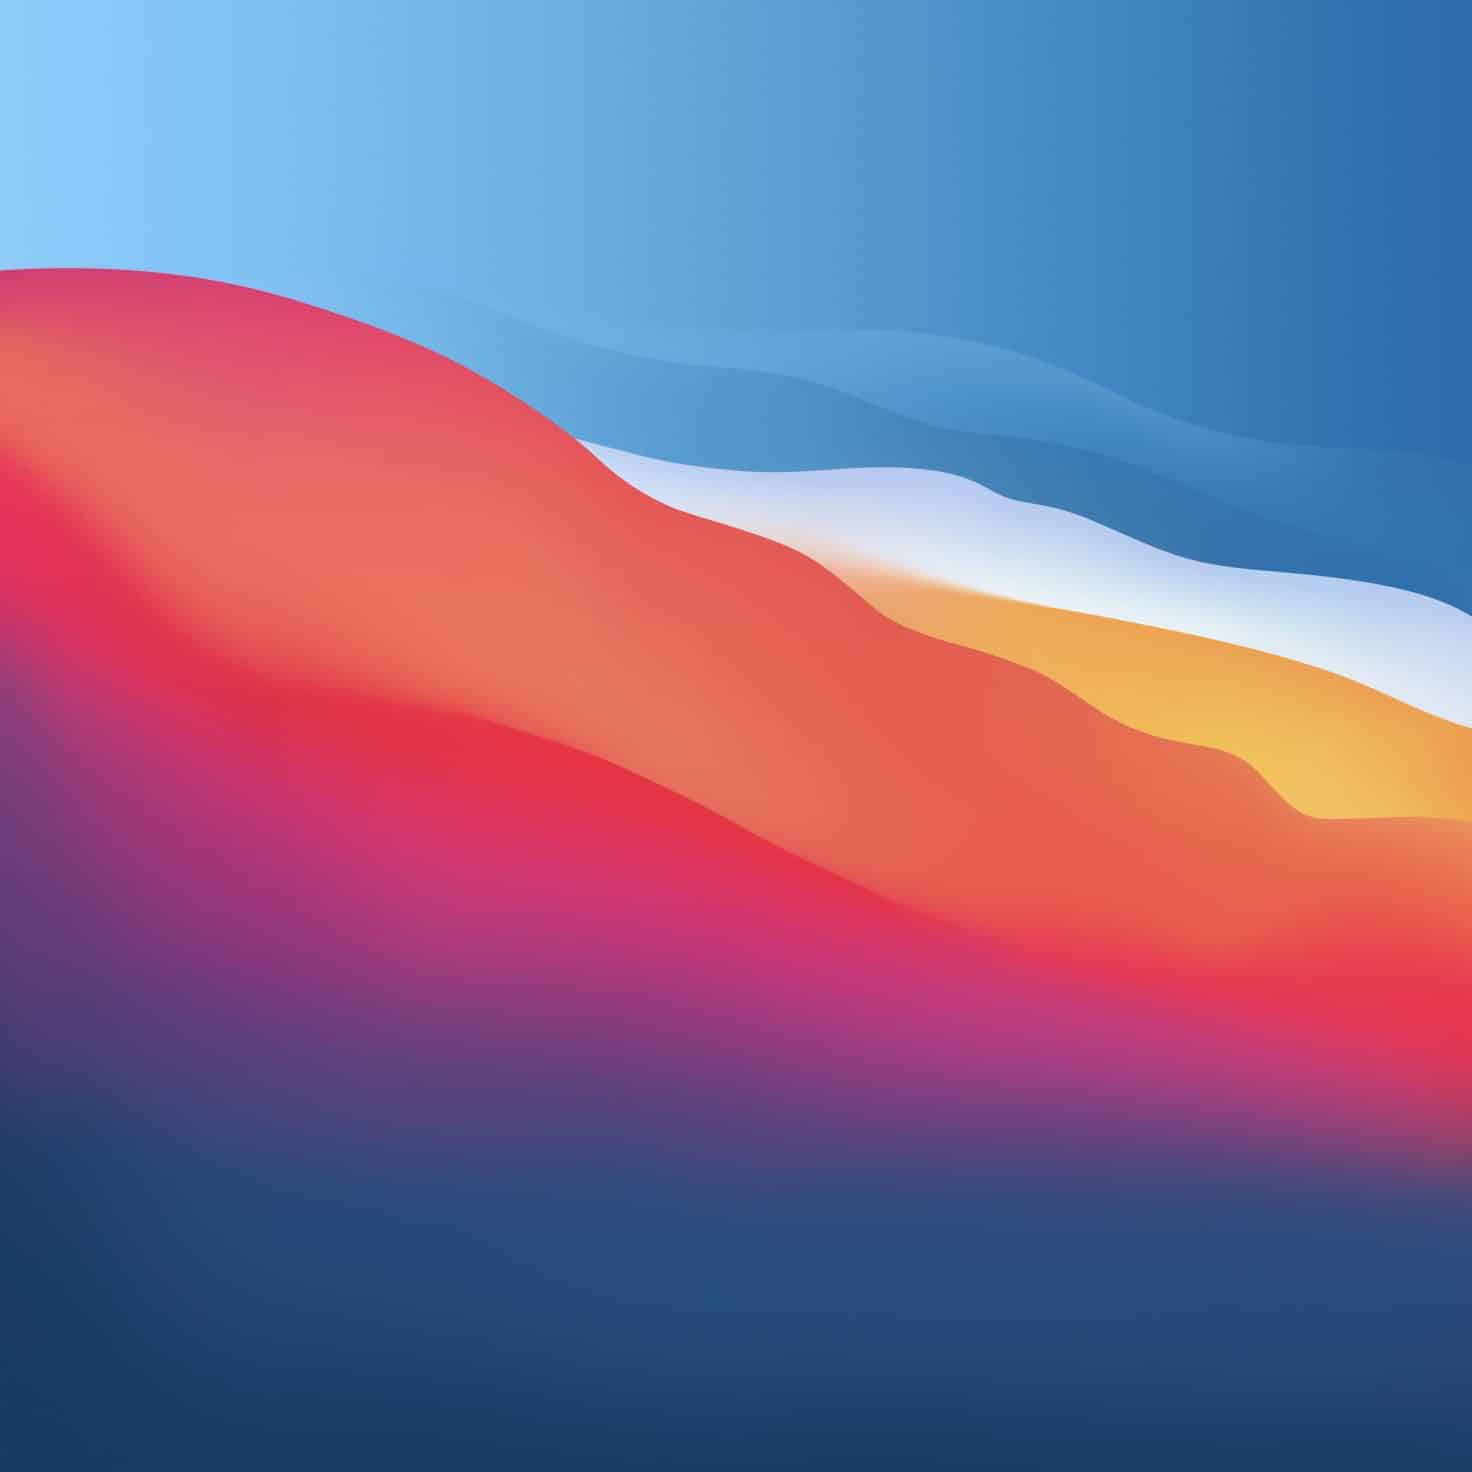 Cách tải hình nền Macbook Pro 14 inch và 16 inch 2021 chính thức mới